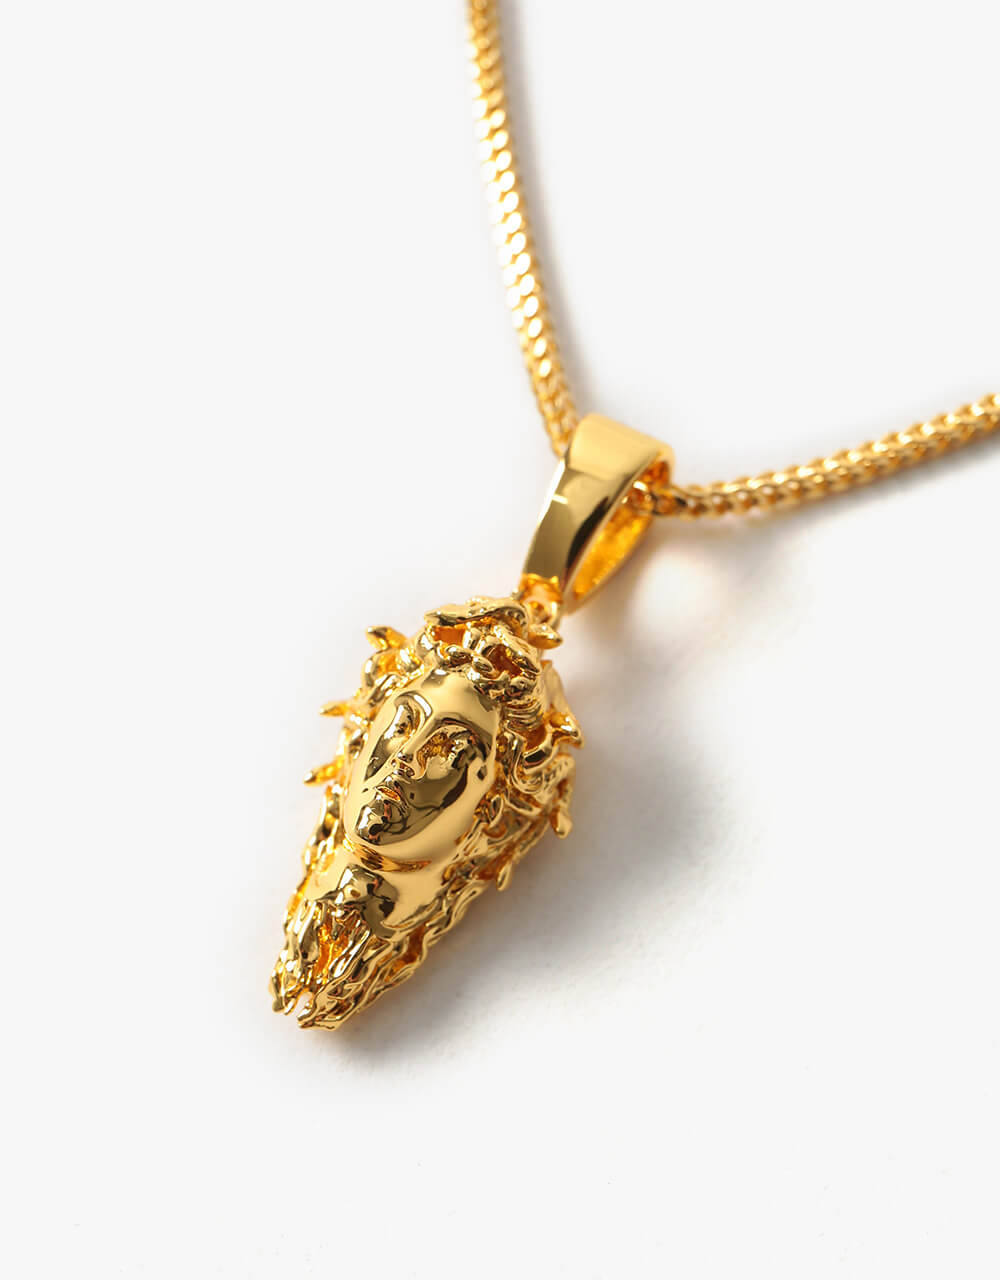 Midvs Co 18K Gold Plated Medusa Necklace - Gold